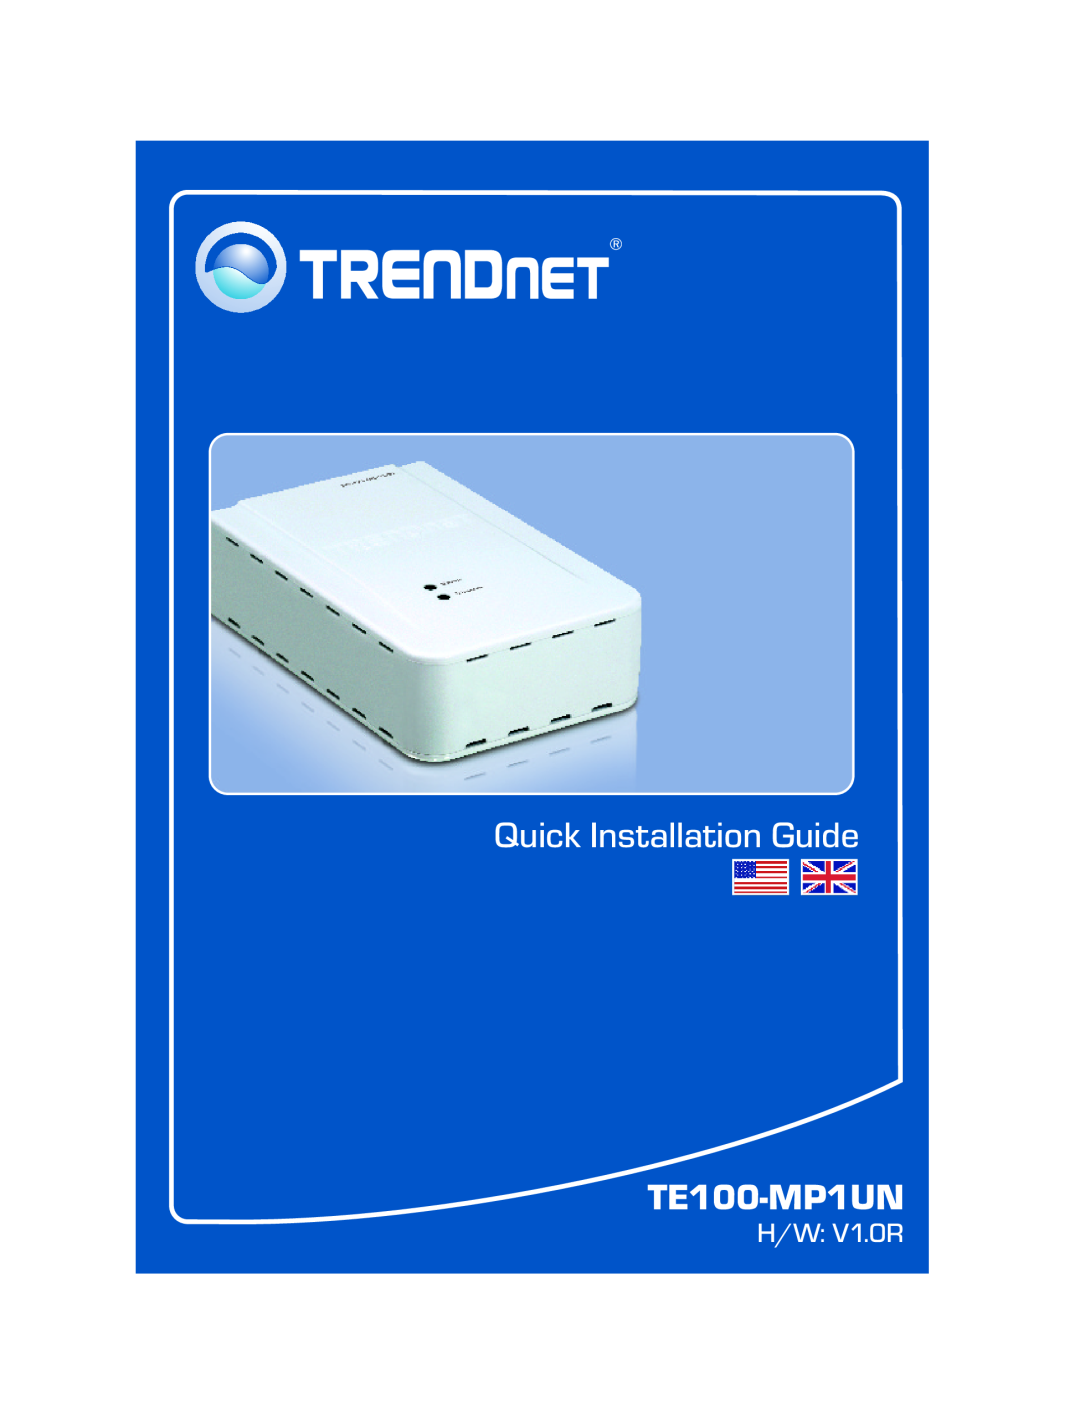 TRENDnet Multi-Function Printer manual Quick Installation Guide, TE100-MP1UN, H/W V1.0R 